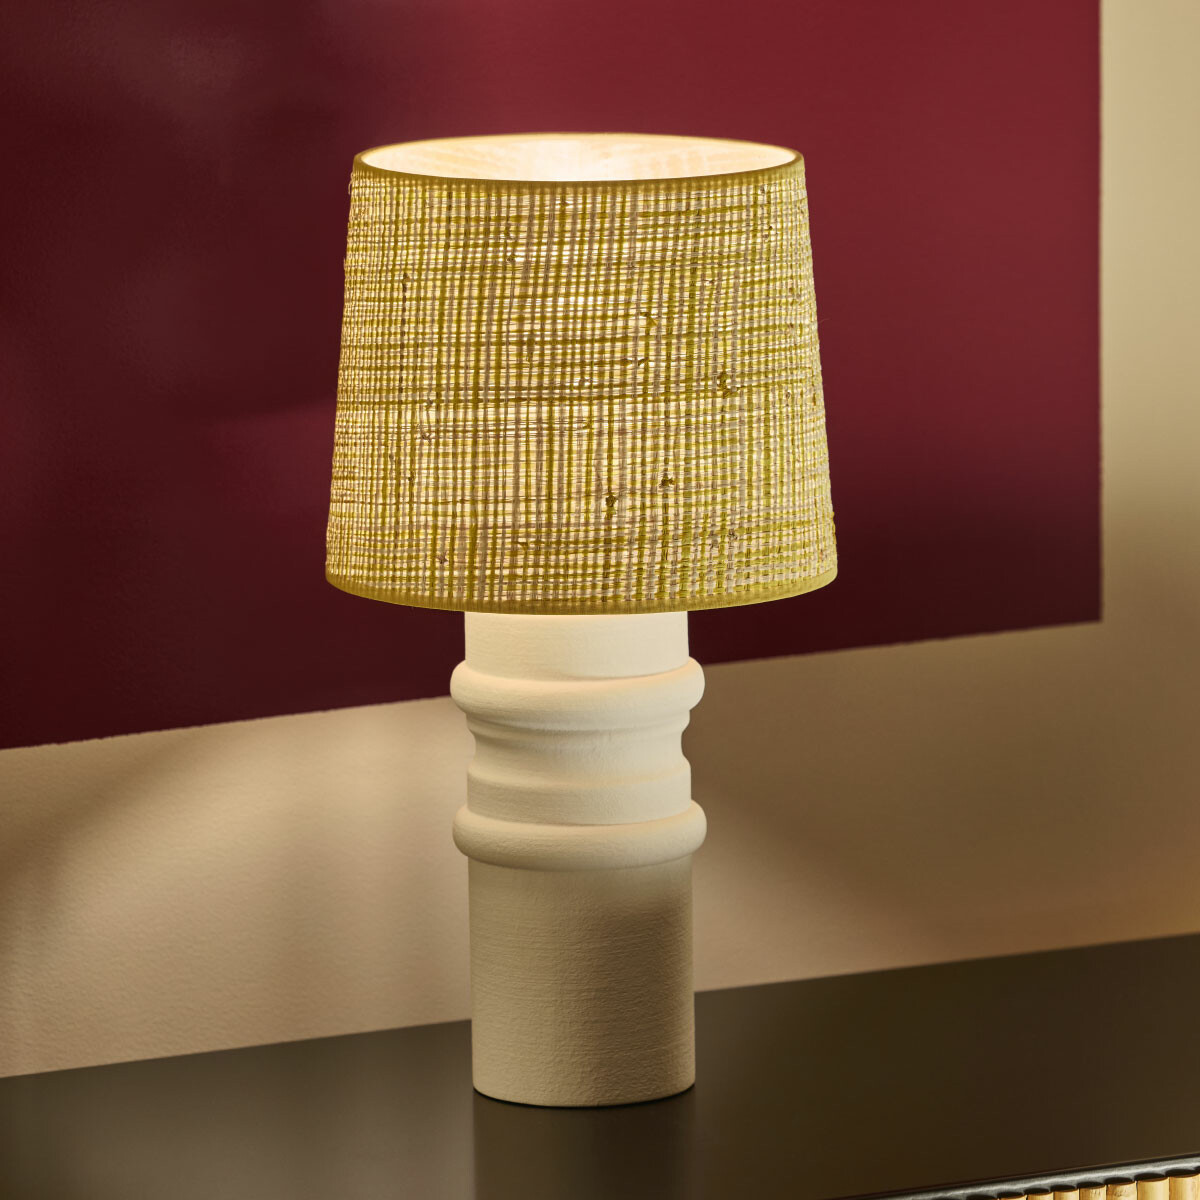 Aquarius Table lamp, Amarillo - H41x ø23 cm - Ceramic / Cotton lampshade - image 2